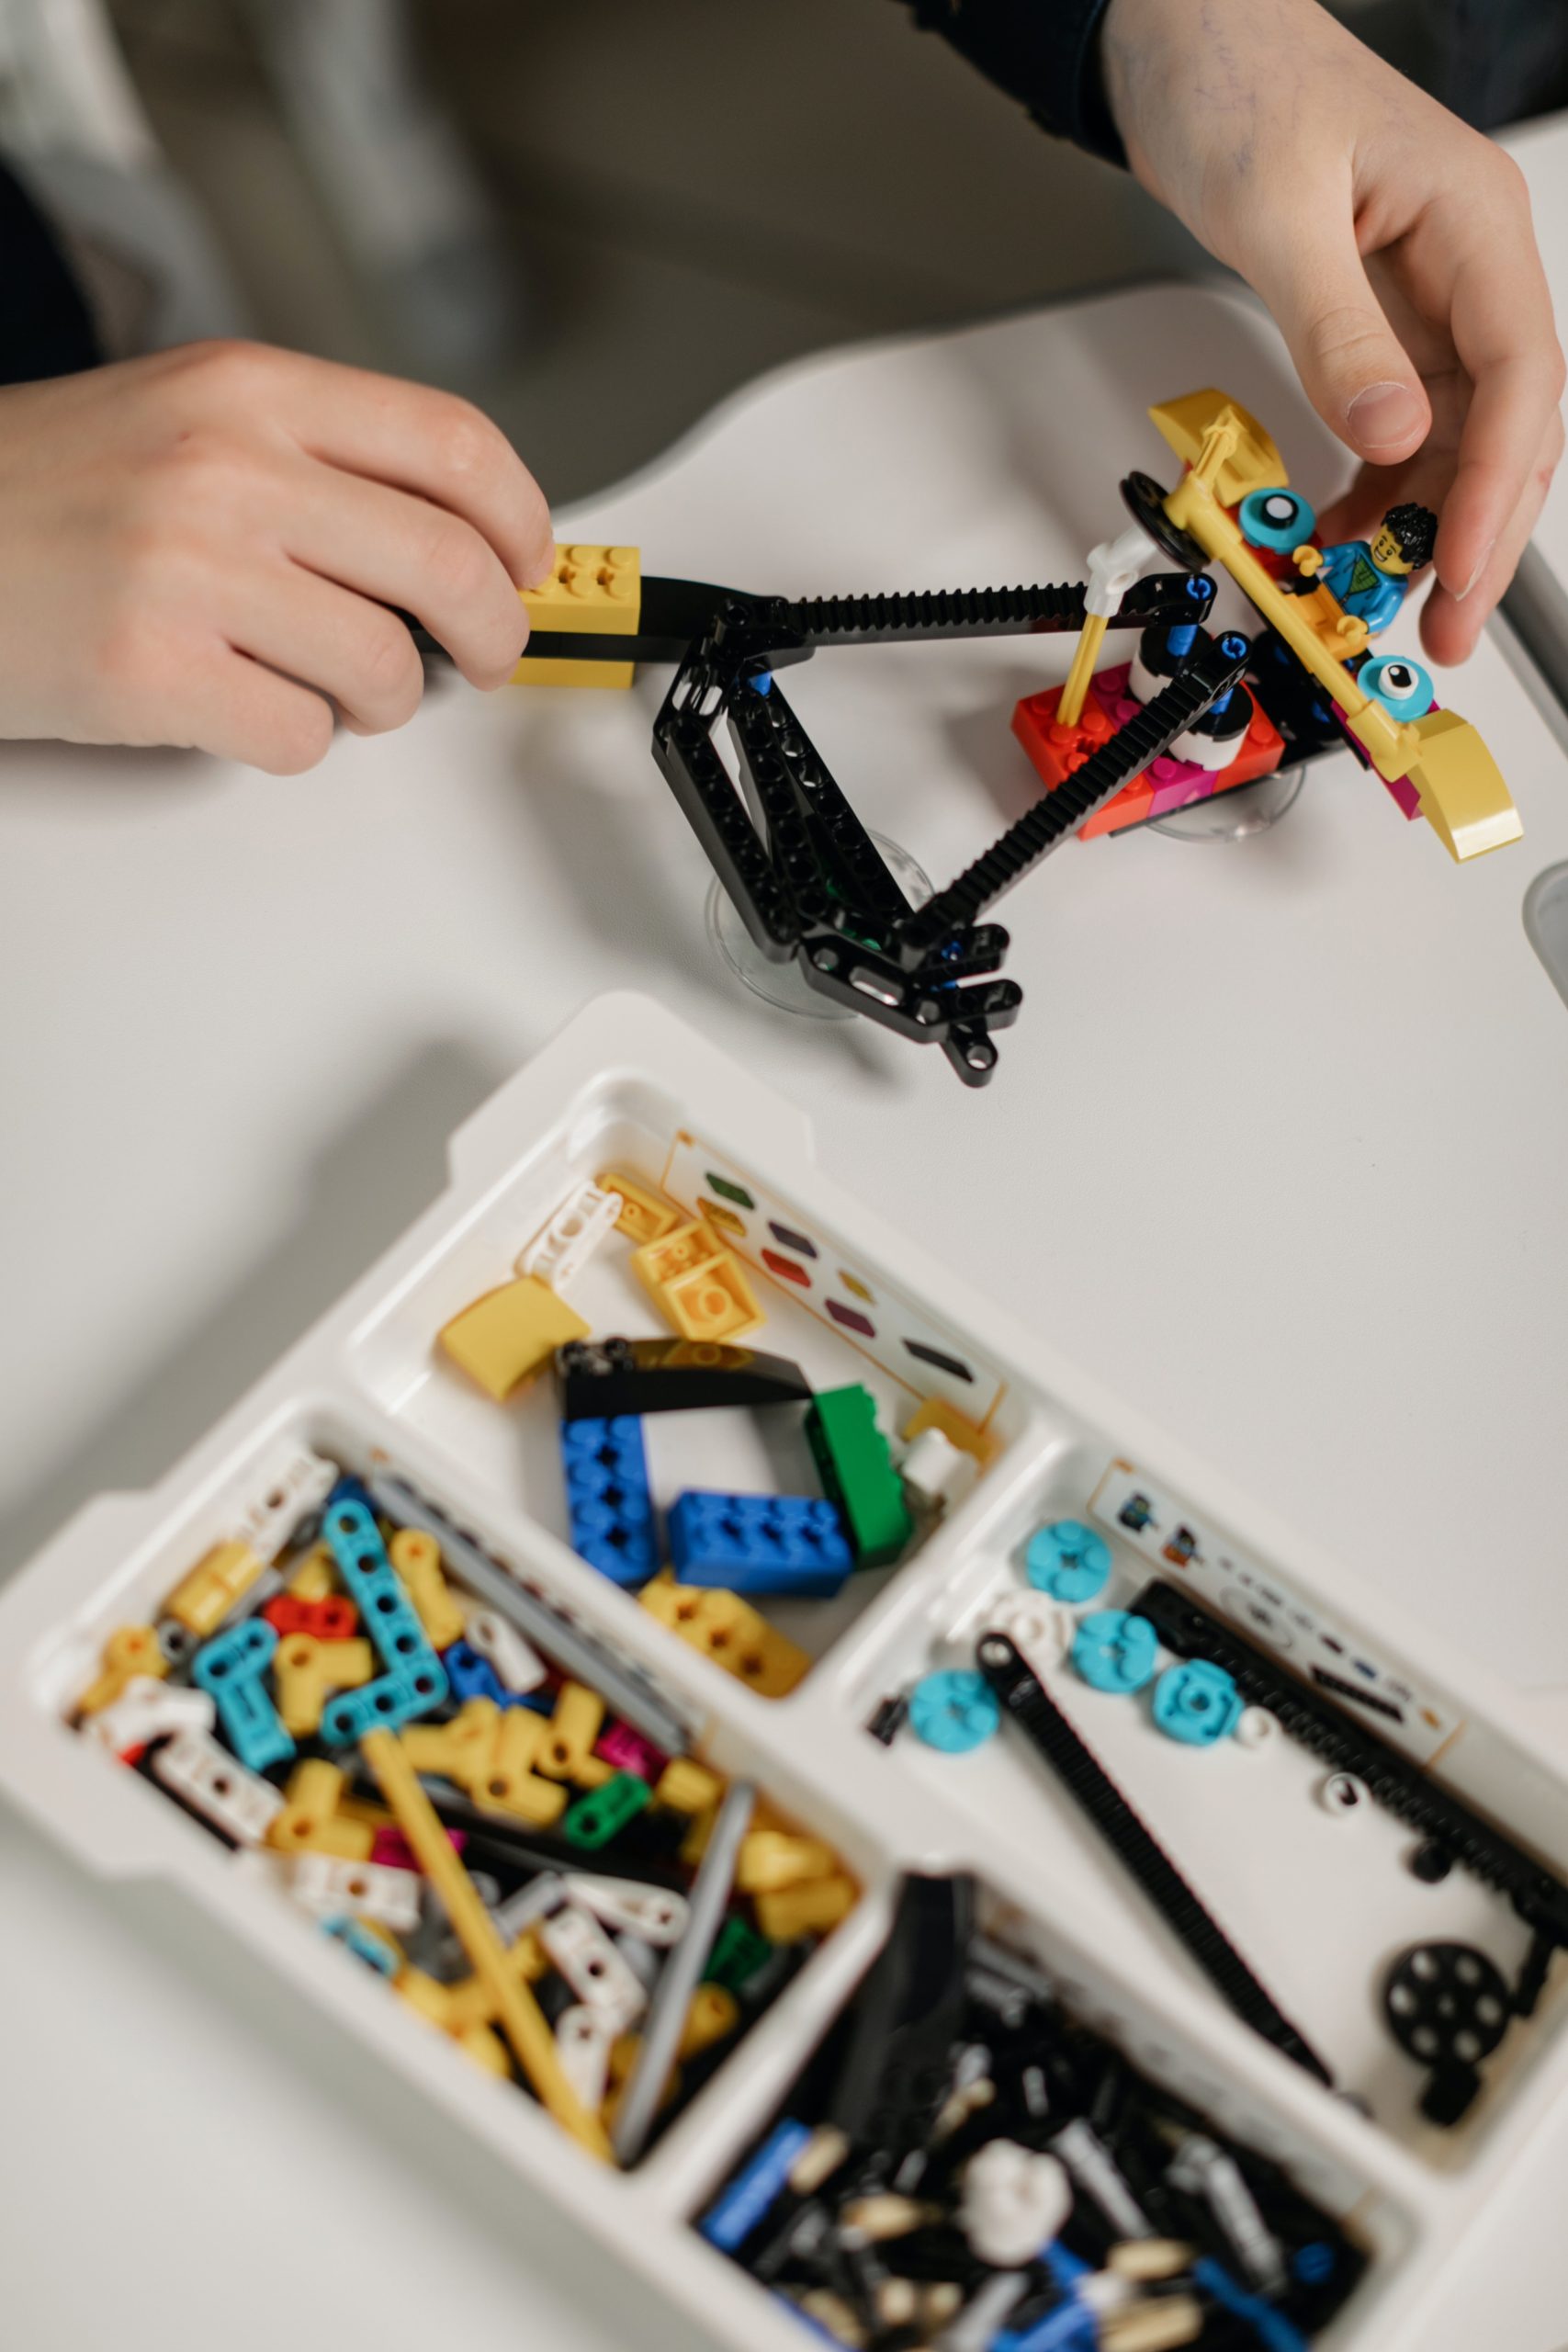 Legos and Imaginative Play